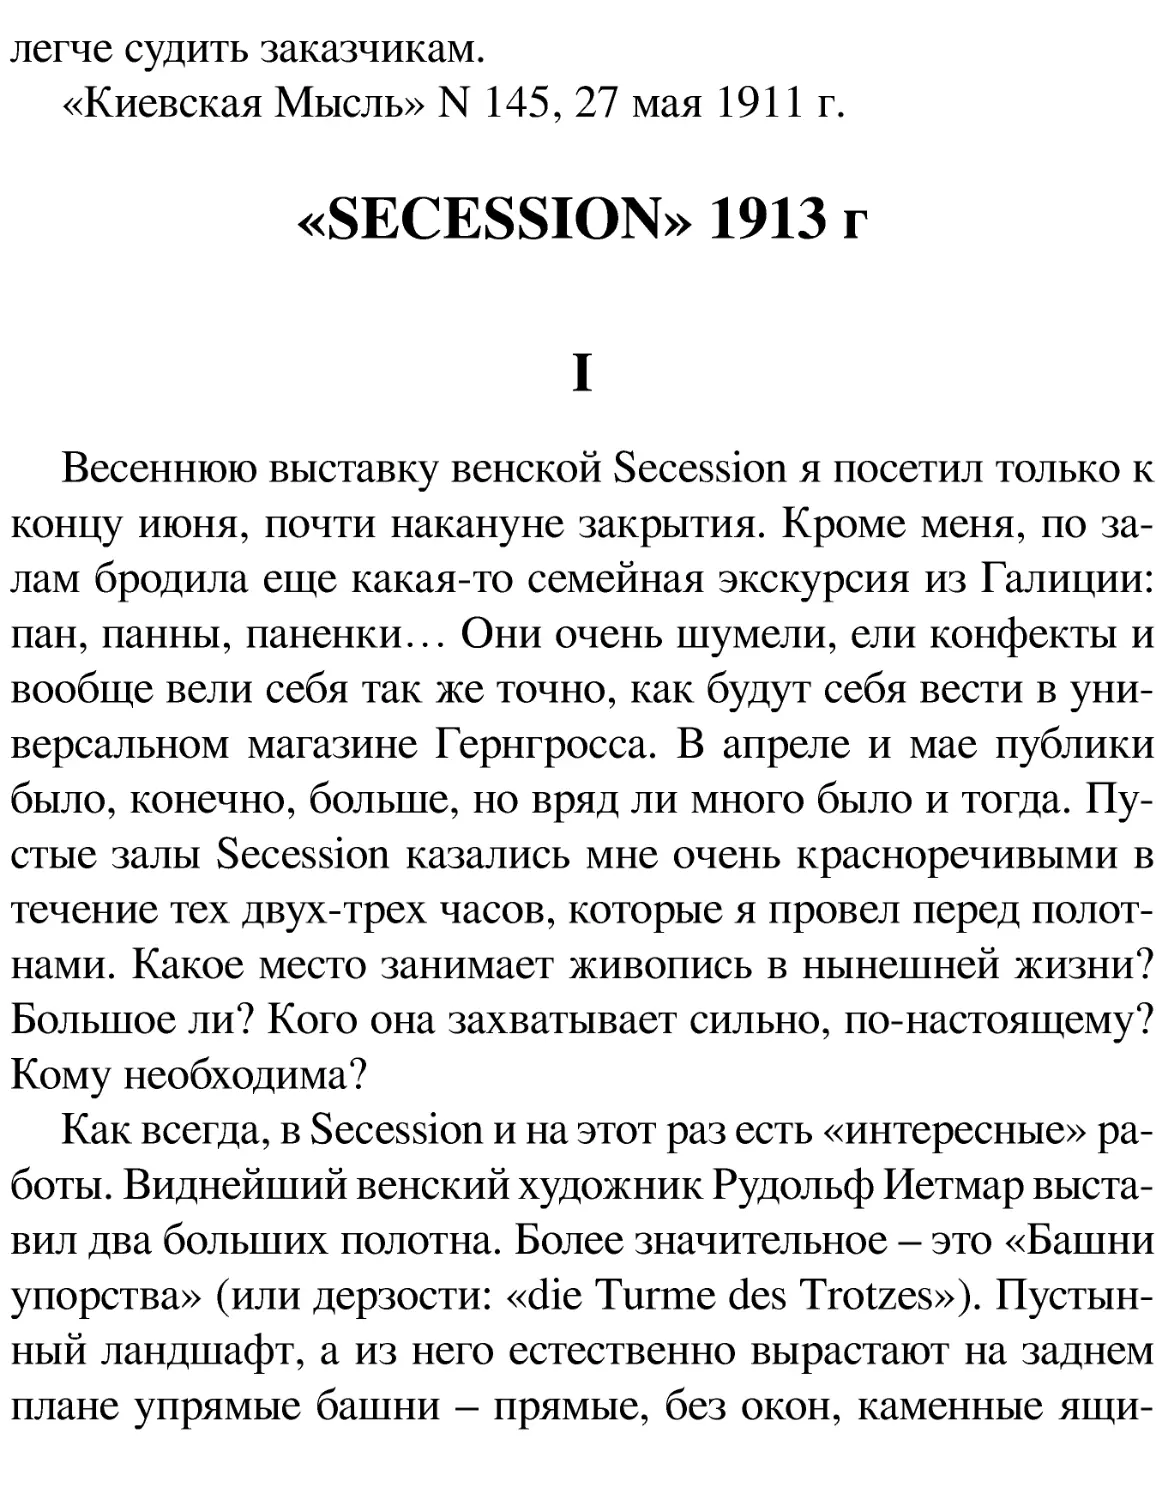 «SECESSION» 1913 г
I